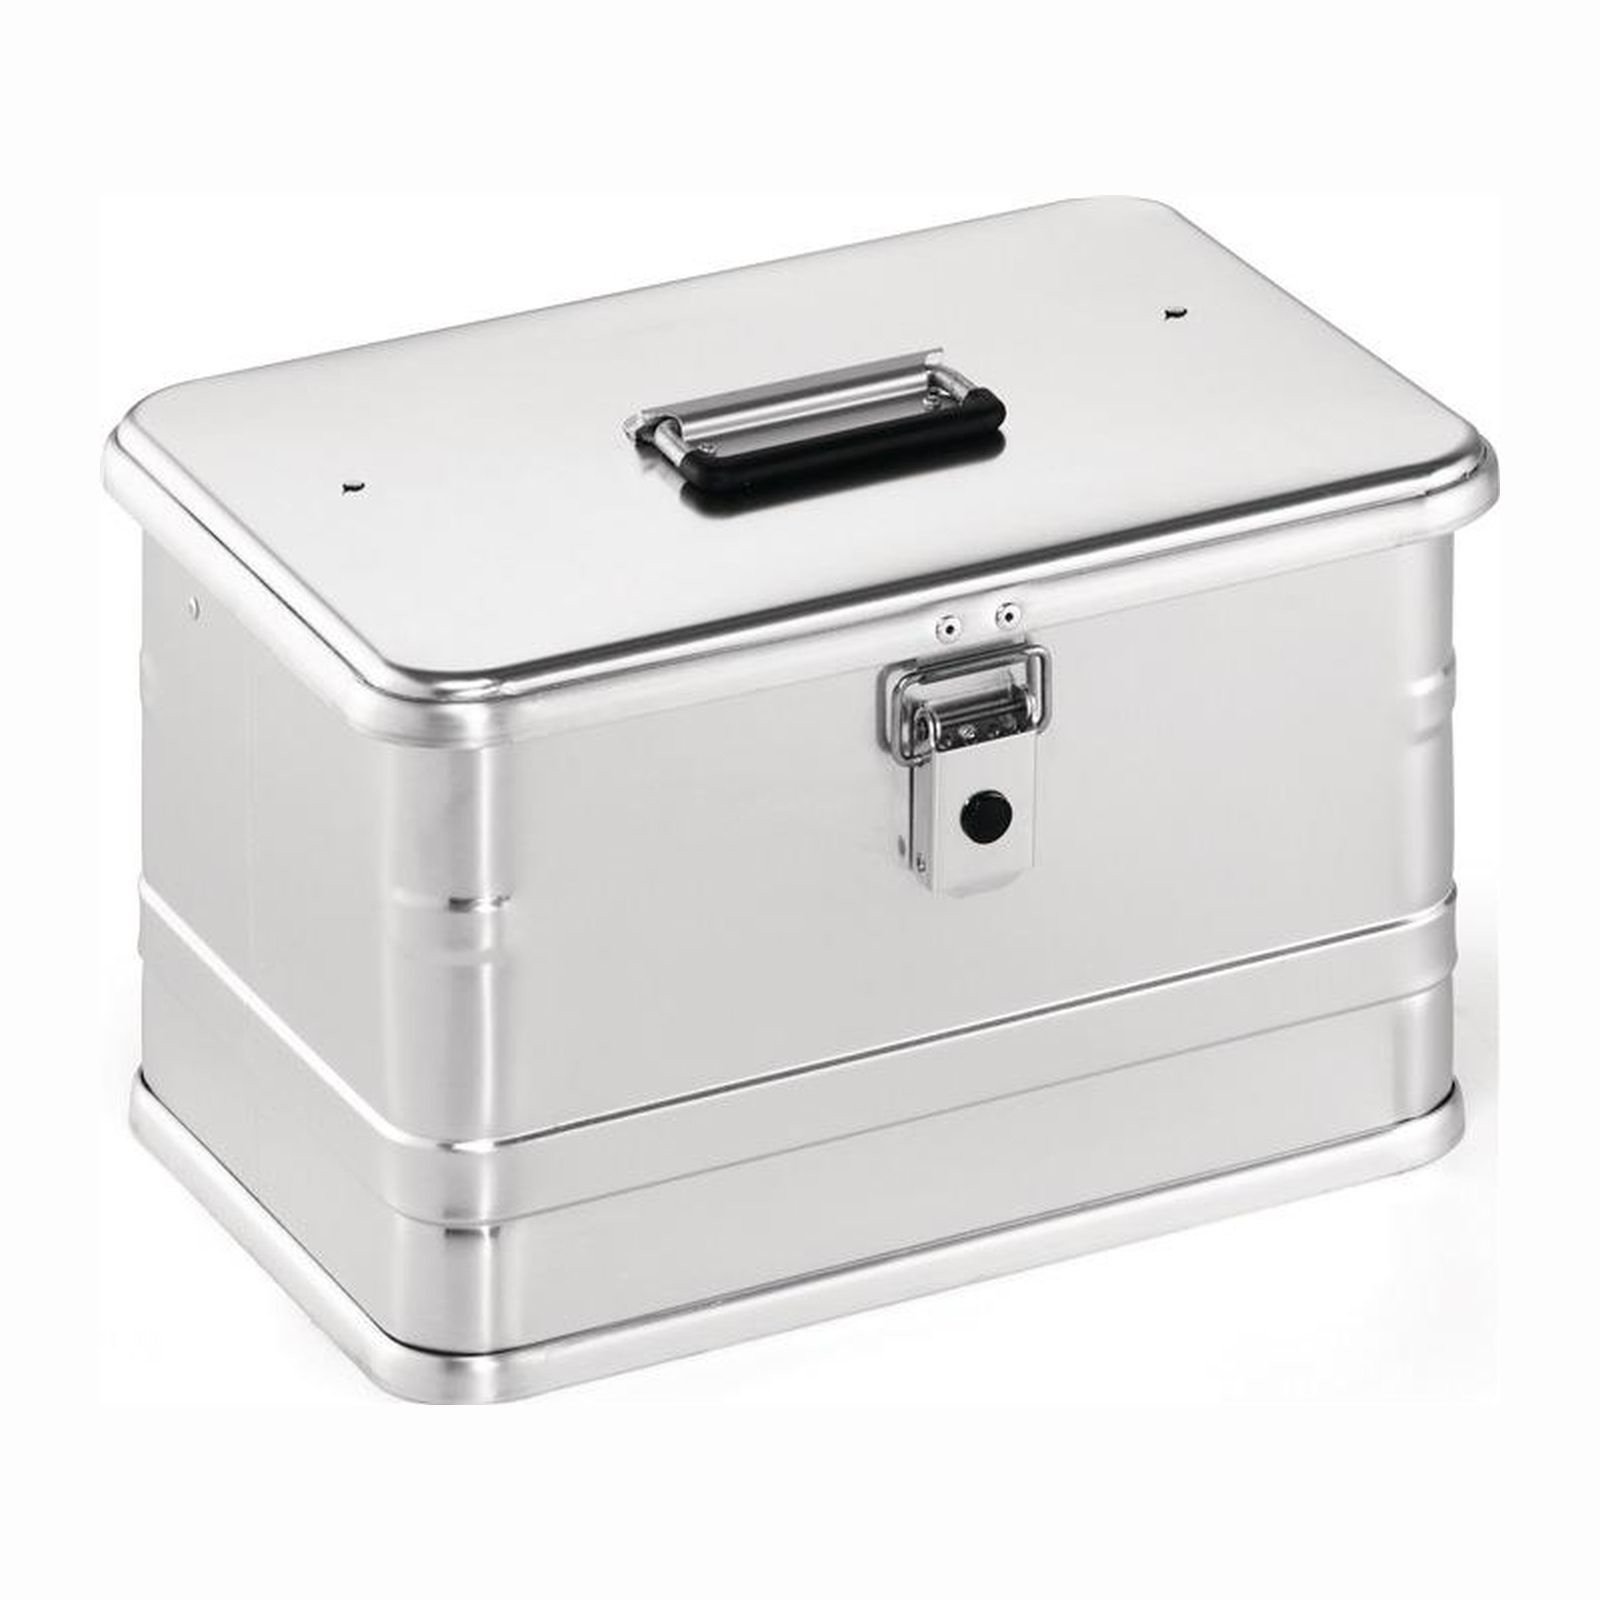 Aluminiumbox mit Klapphebelverschlüssen mit Bohrungen